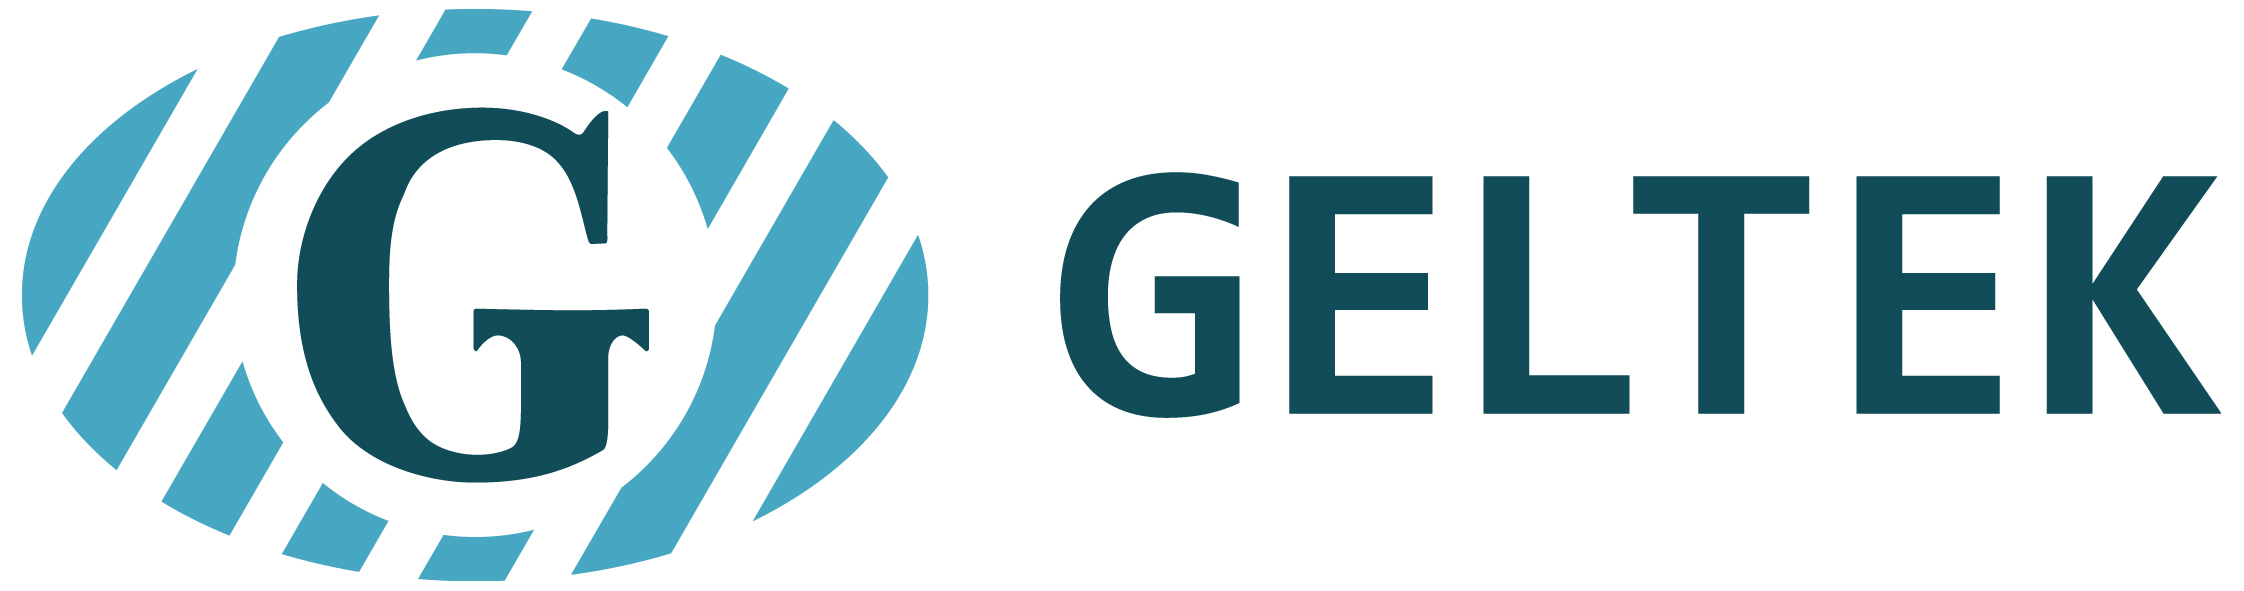 Geltek-Medica Ltd.